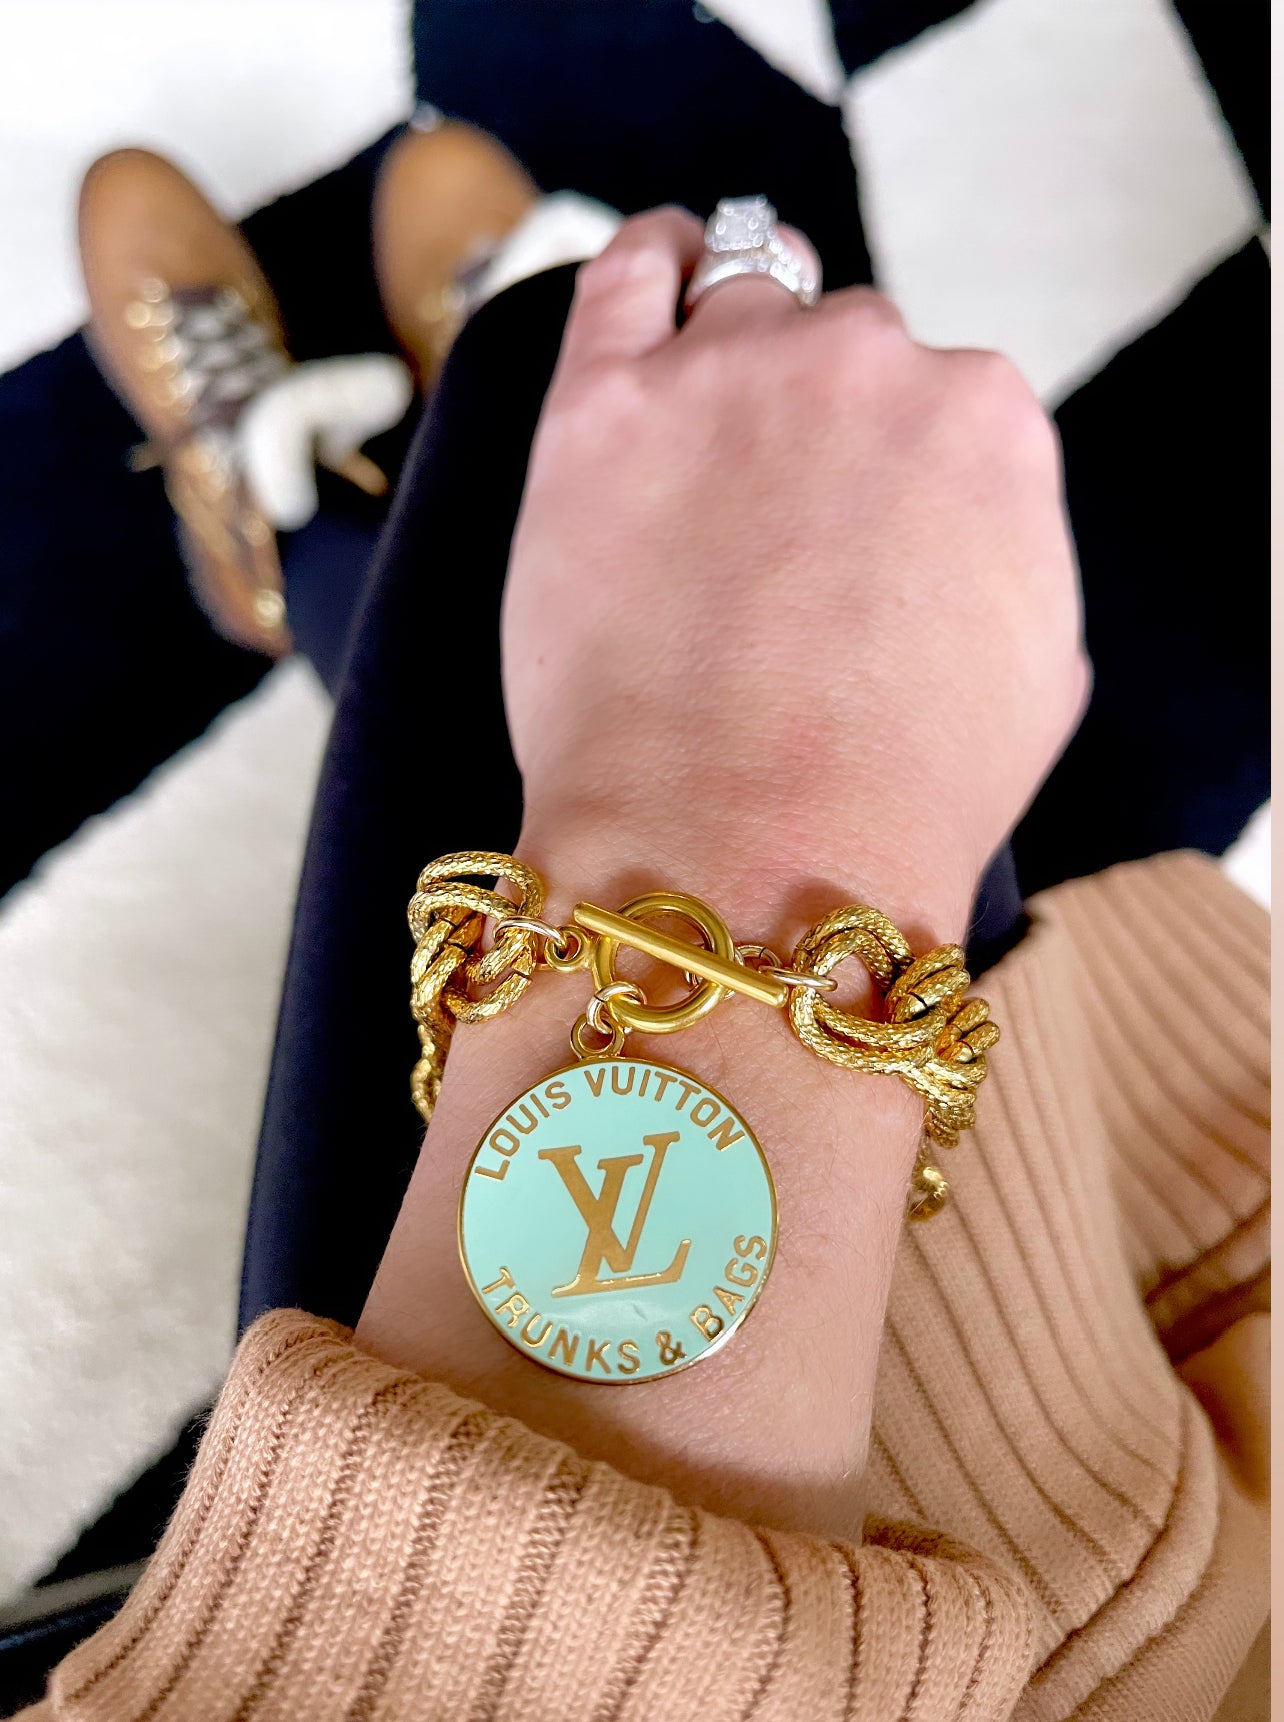 Louis Vuitton, Jewelry, Louis Vuitton Trunks Bags Charm Bracelet